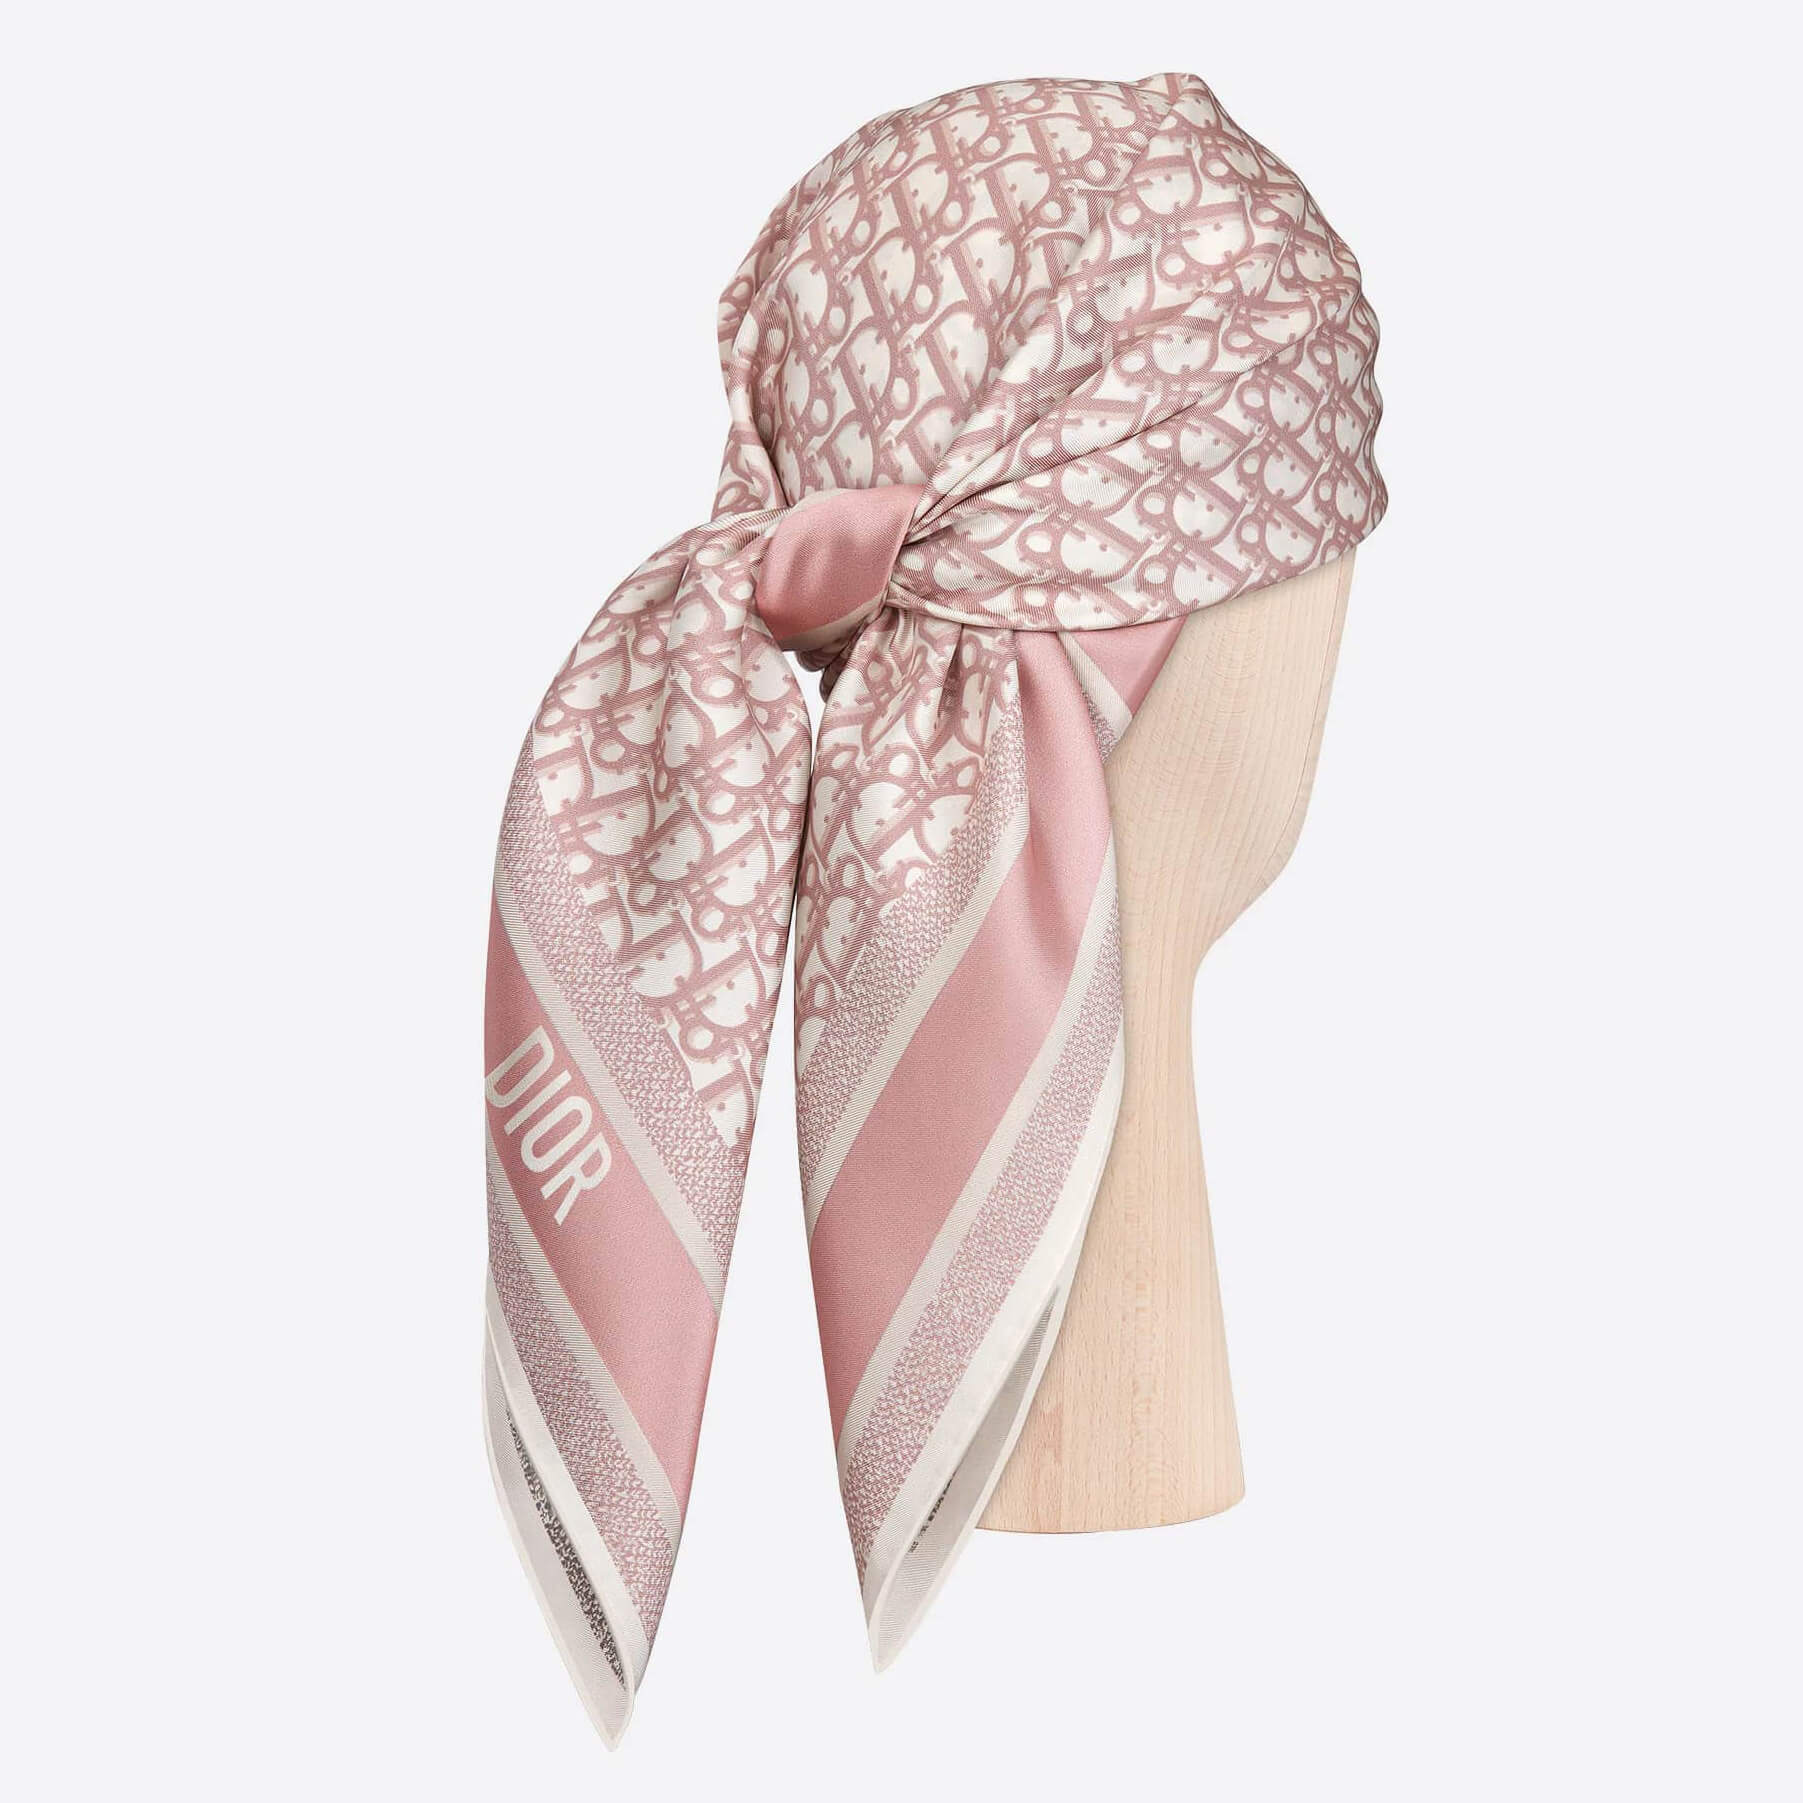 Шелковый платок Dior Oblique 85х85 см КРАЙ НЕ ОБРАБОТАН, цвет Розовый, фото 2